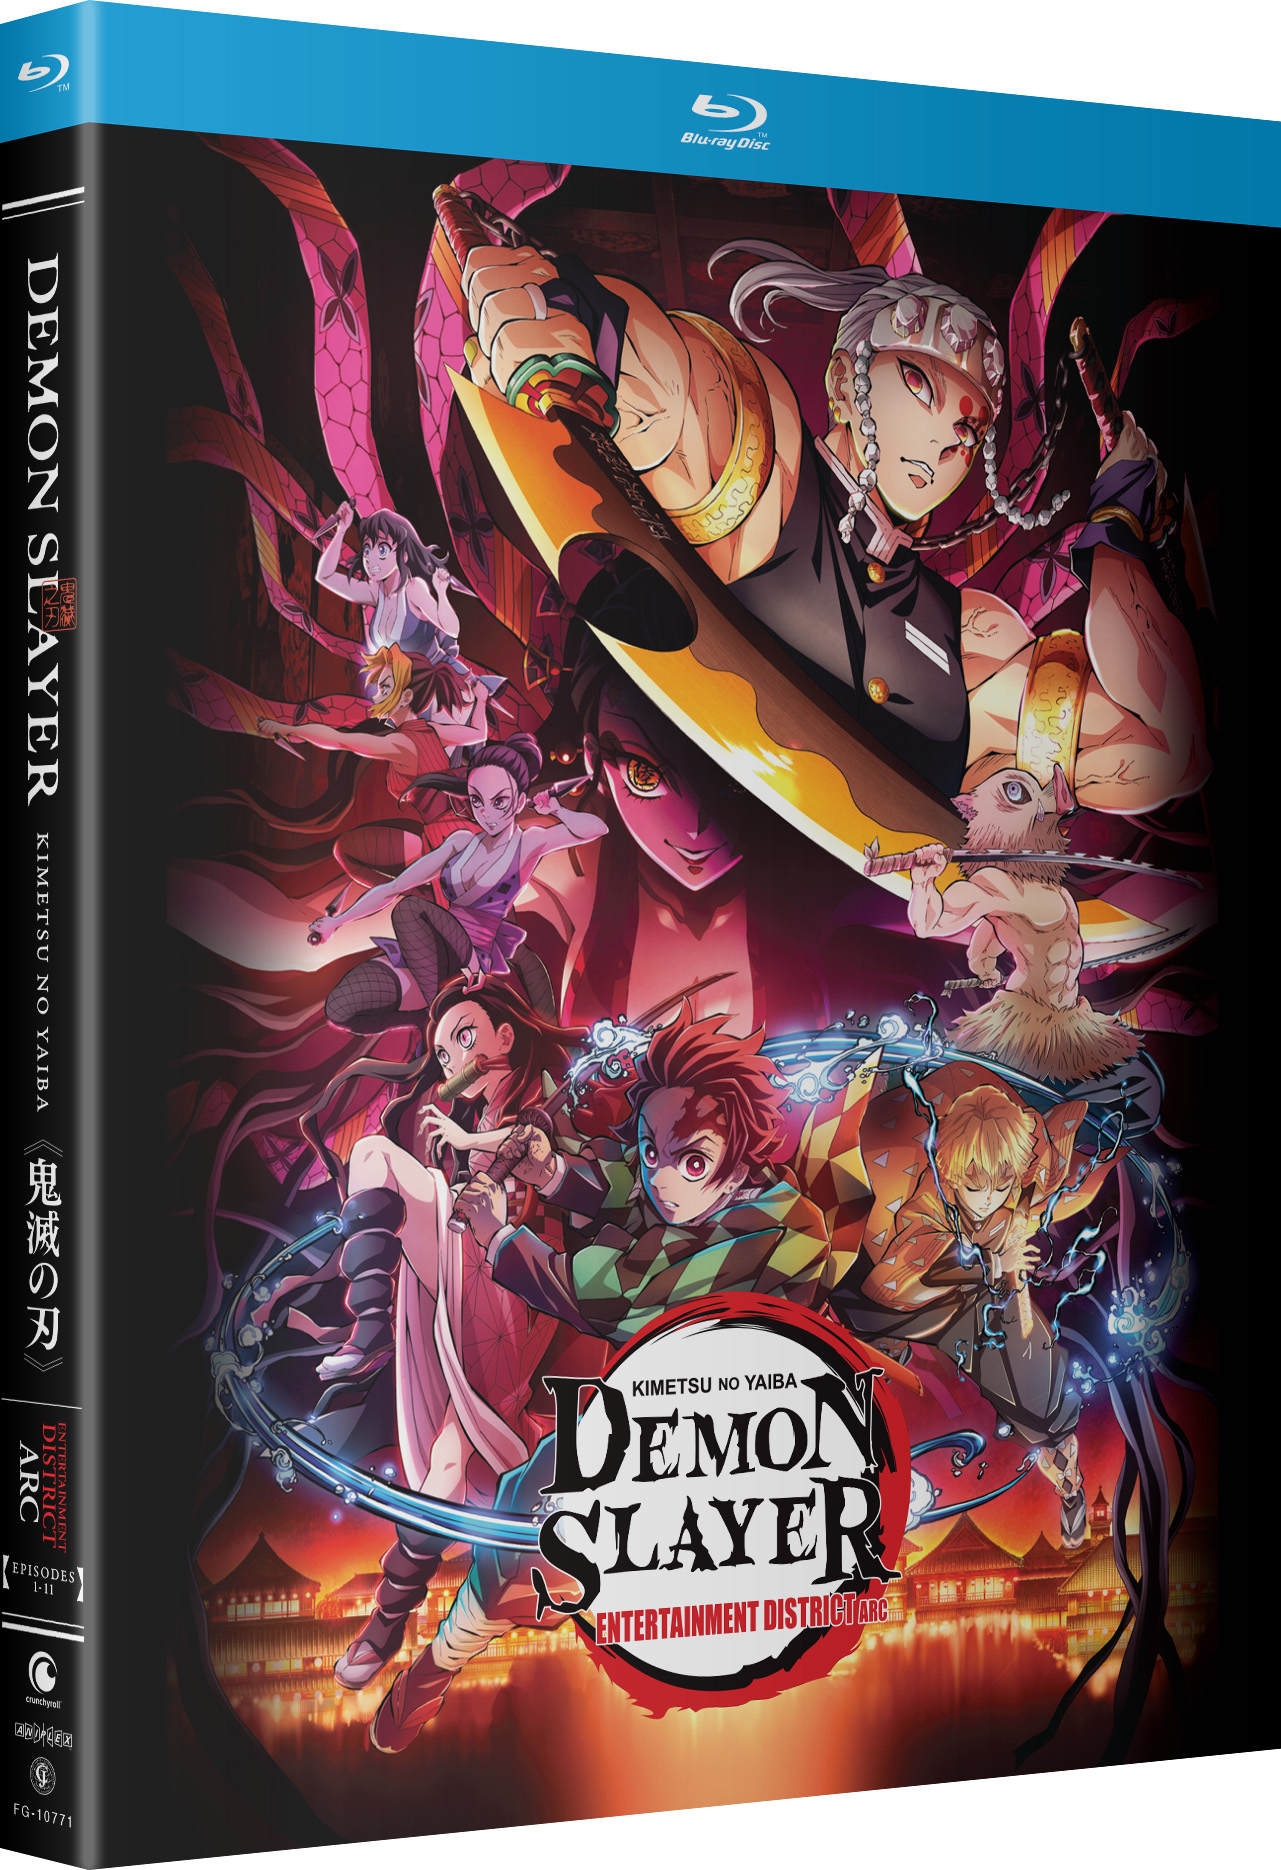 Watch Demon Slayer: Kimetsu no Yaiba season 1 episode 27 streaming online